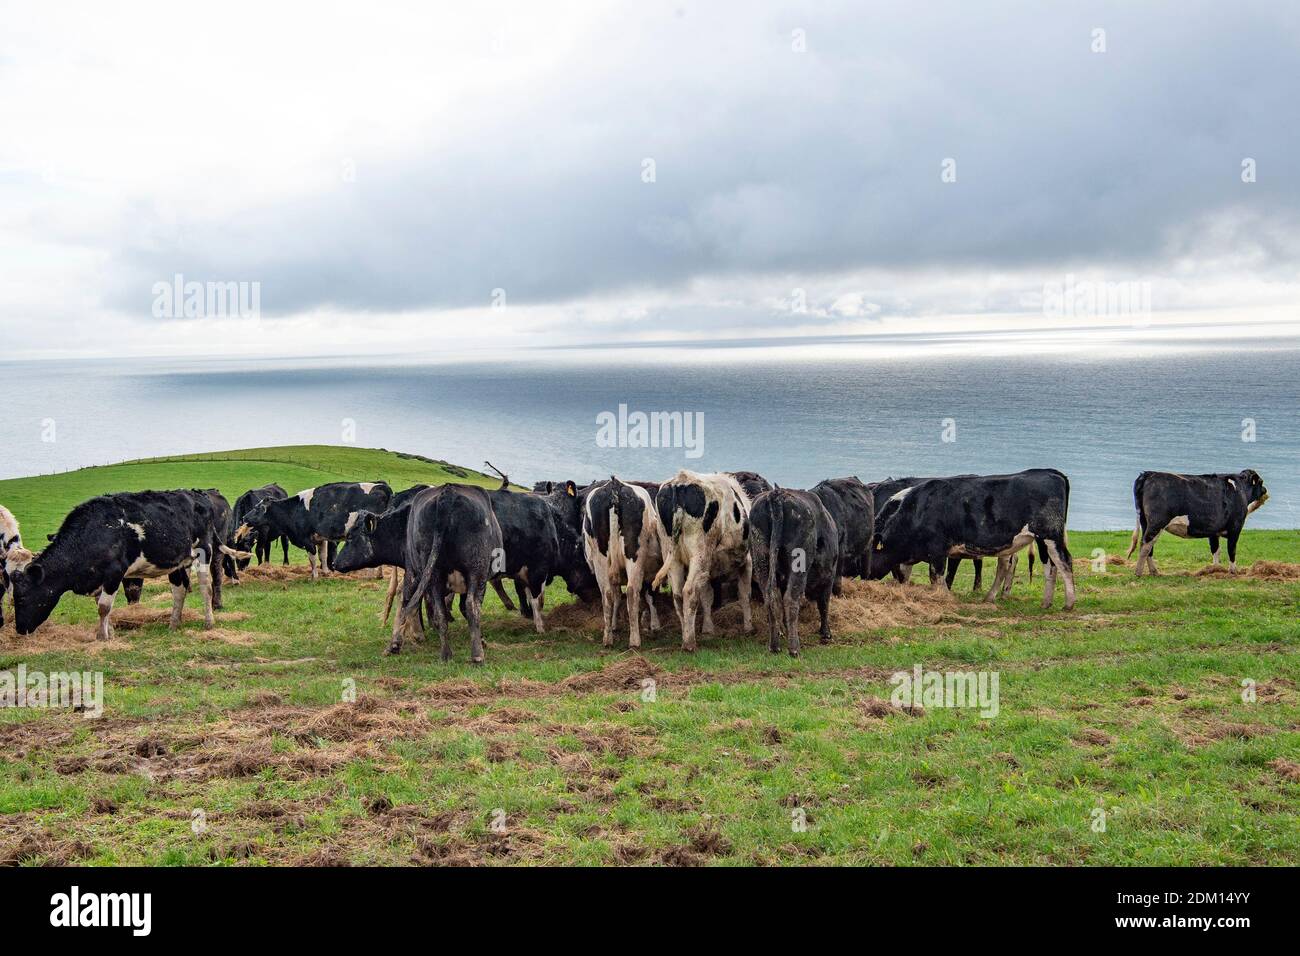 Les vaches laitières Holstein sont alimentées en ensilage dans un champ de falaise Banque D'Images